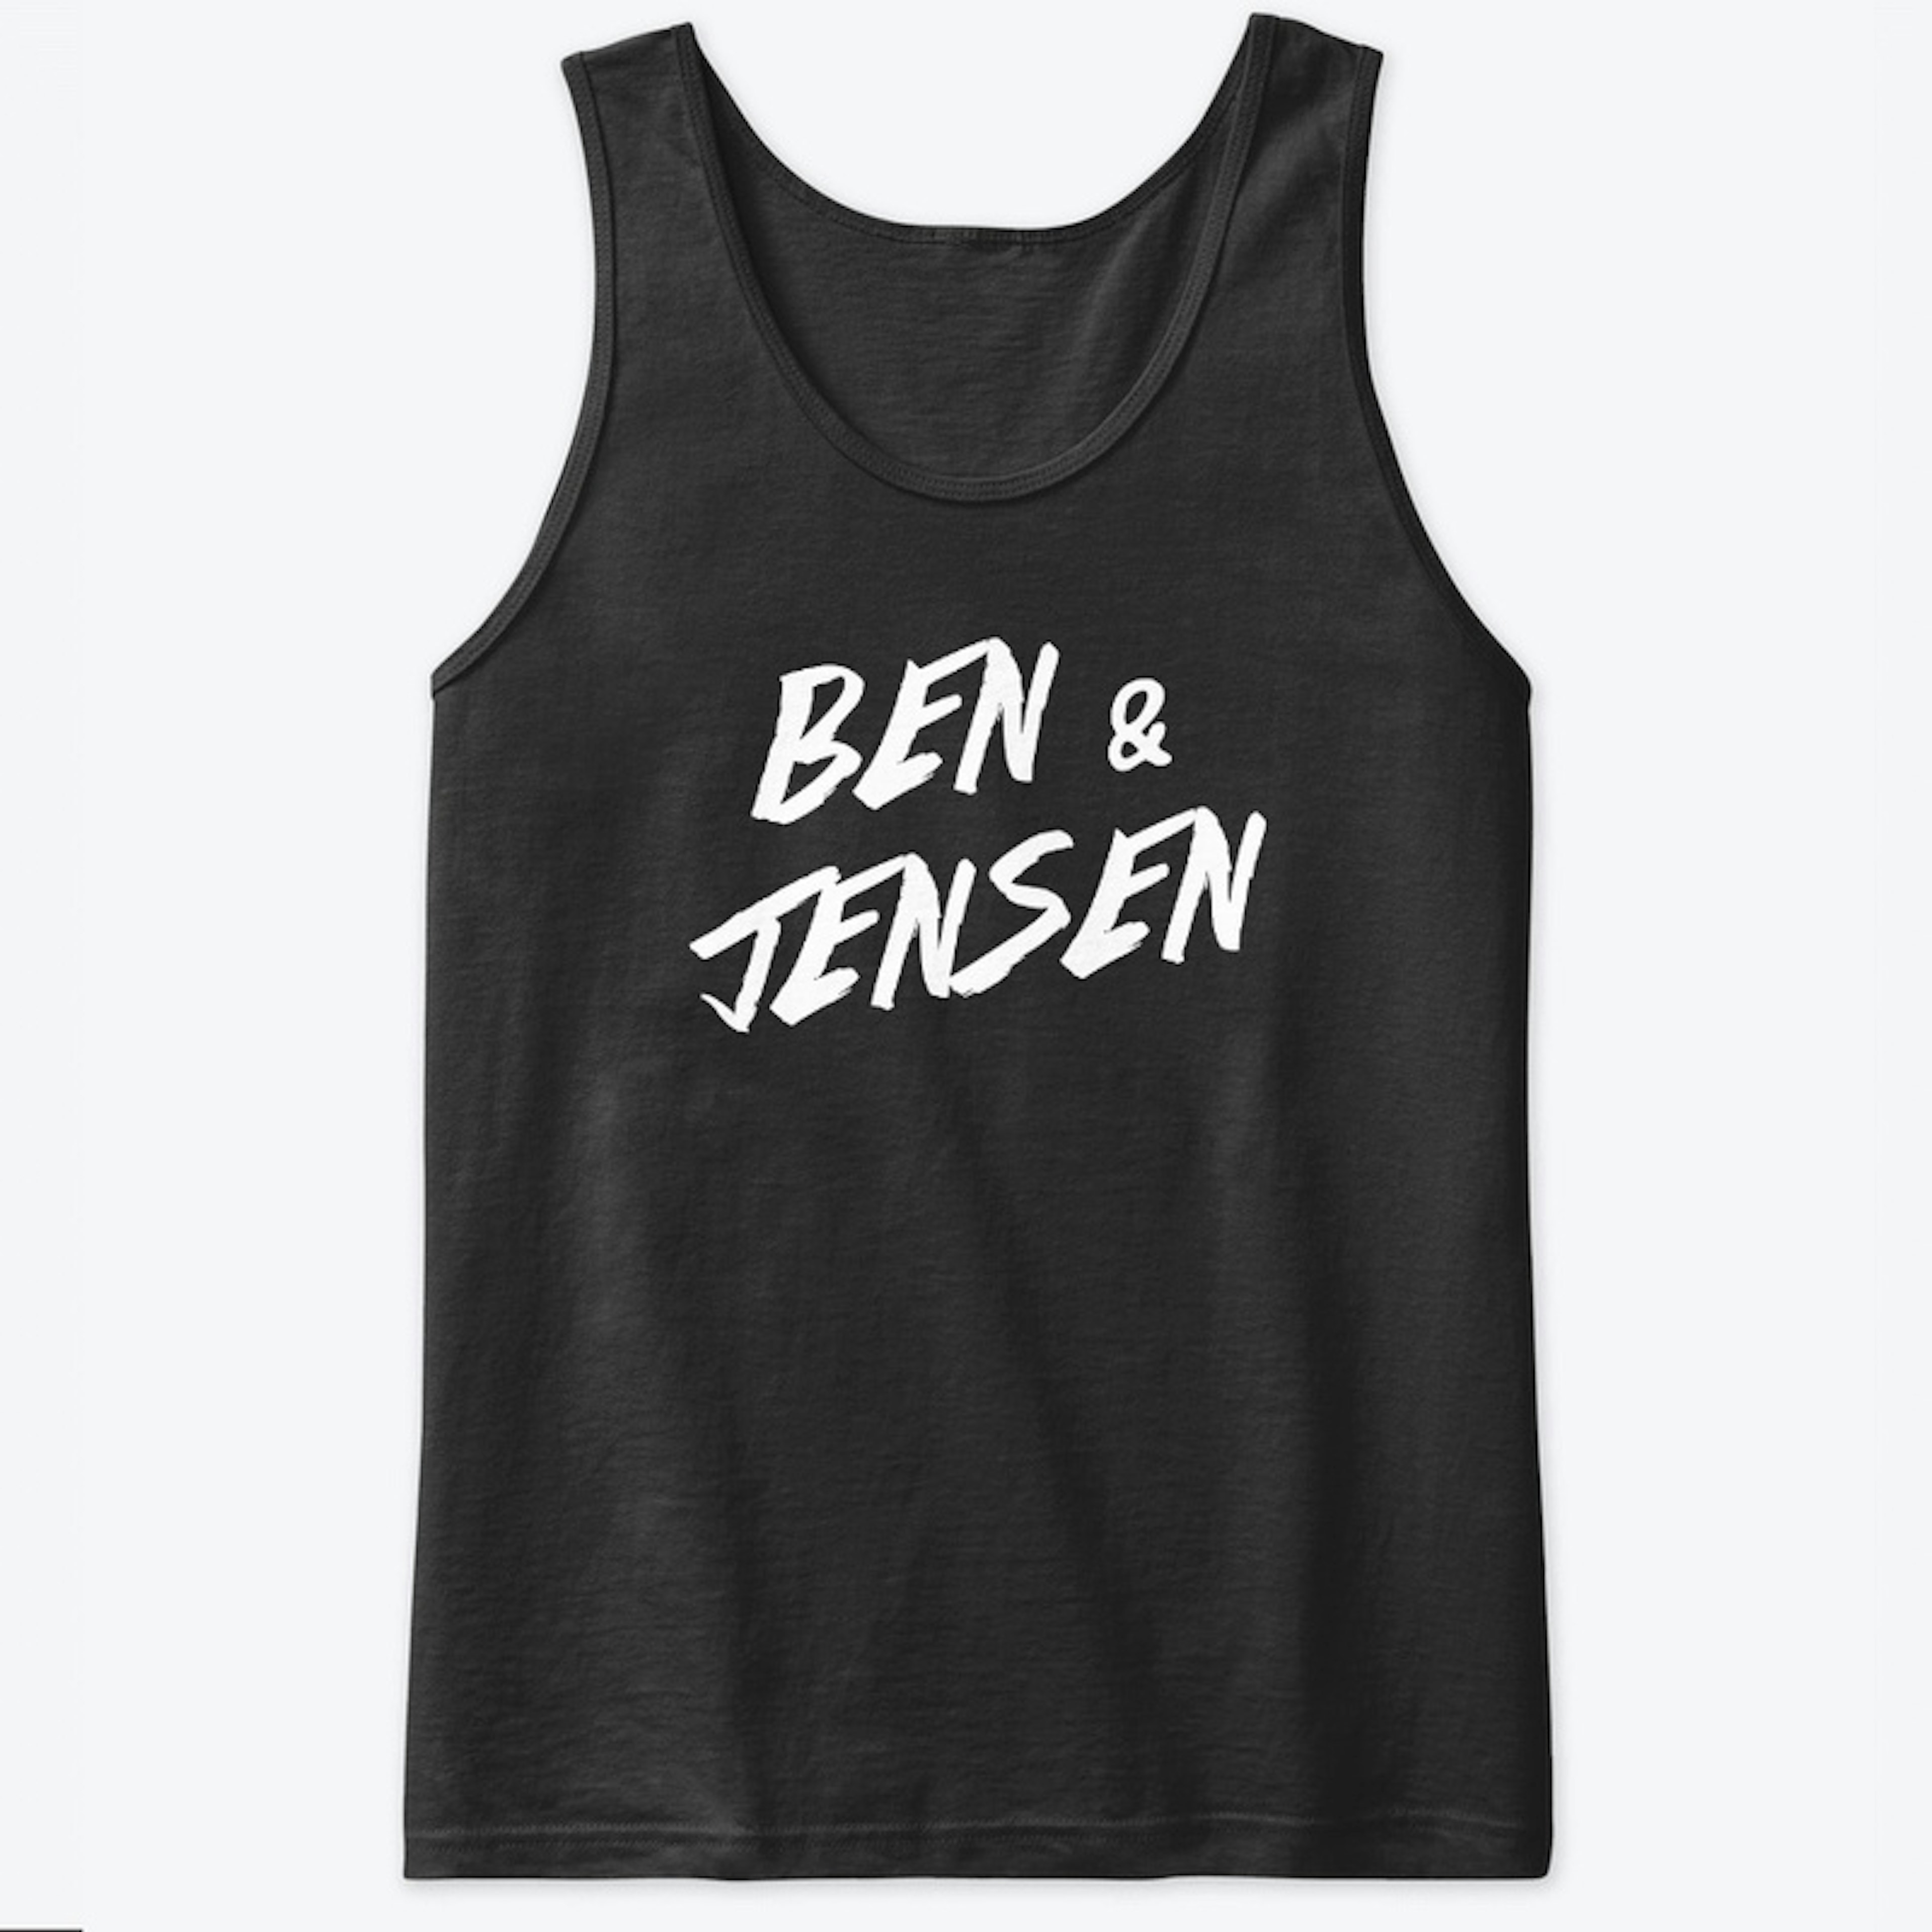 Ben & Jensen - Dark